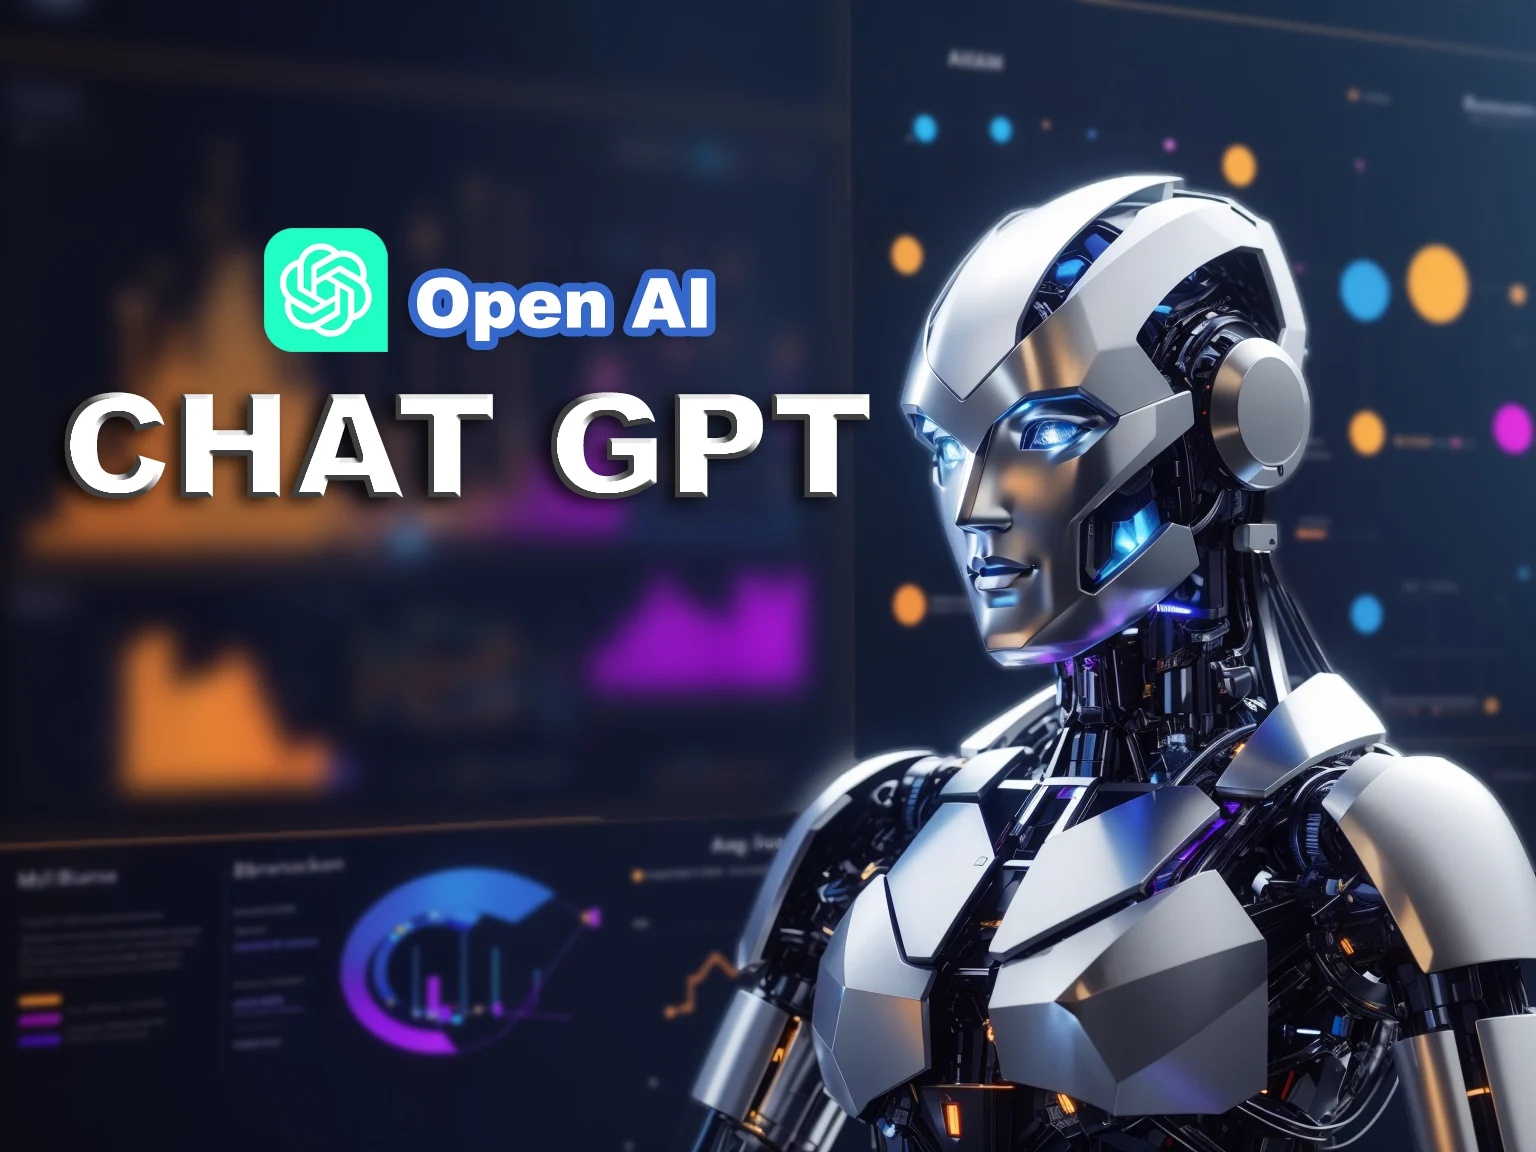 图片展示了一台具有高科技感的机器人头部侧面，背景是OpenAI和CHAT GPT的标识，显示着未来技术的氛围。